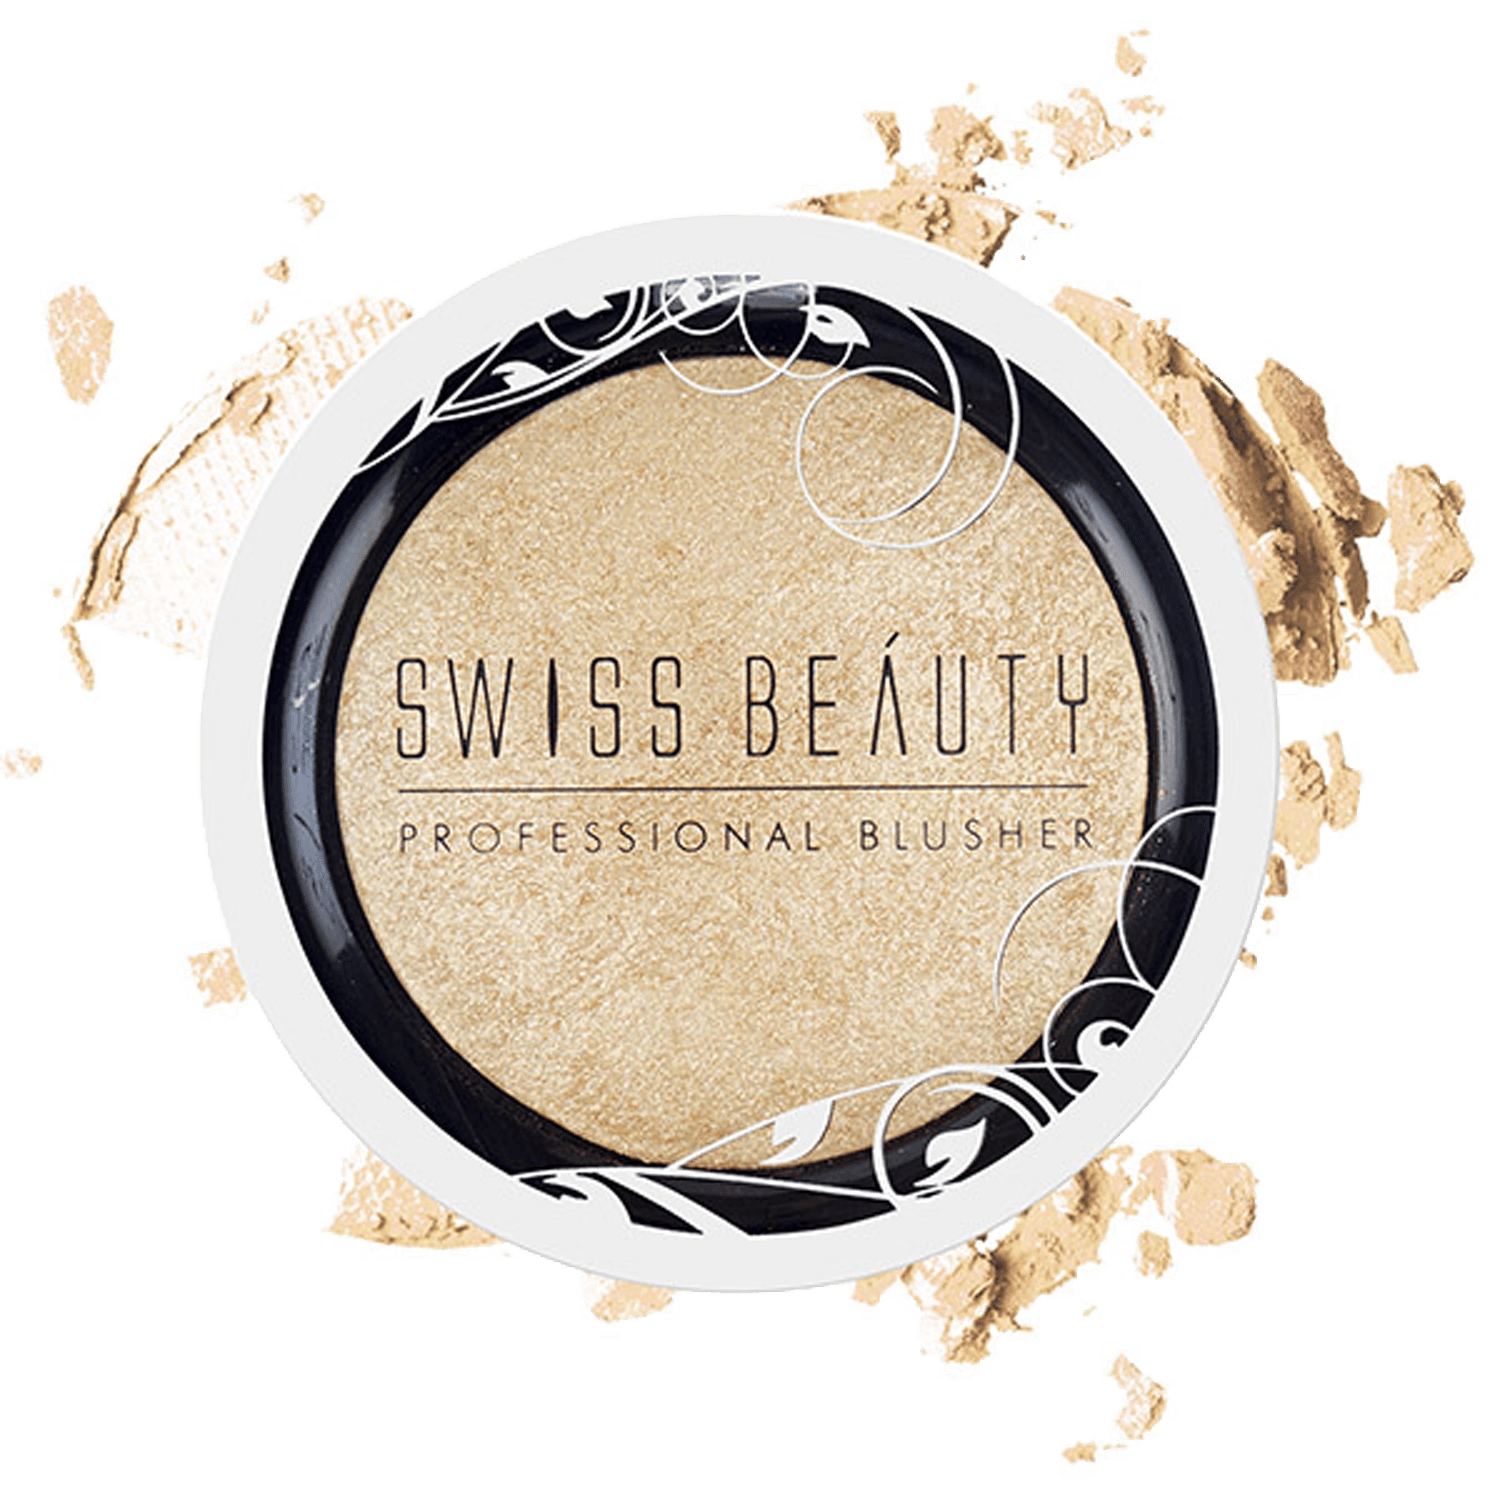 Swiss Beauty | Swiss Beauty Professional Blusher - 02 Champagne Gold (6g)